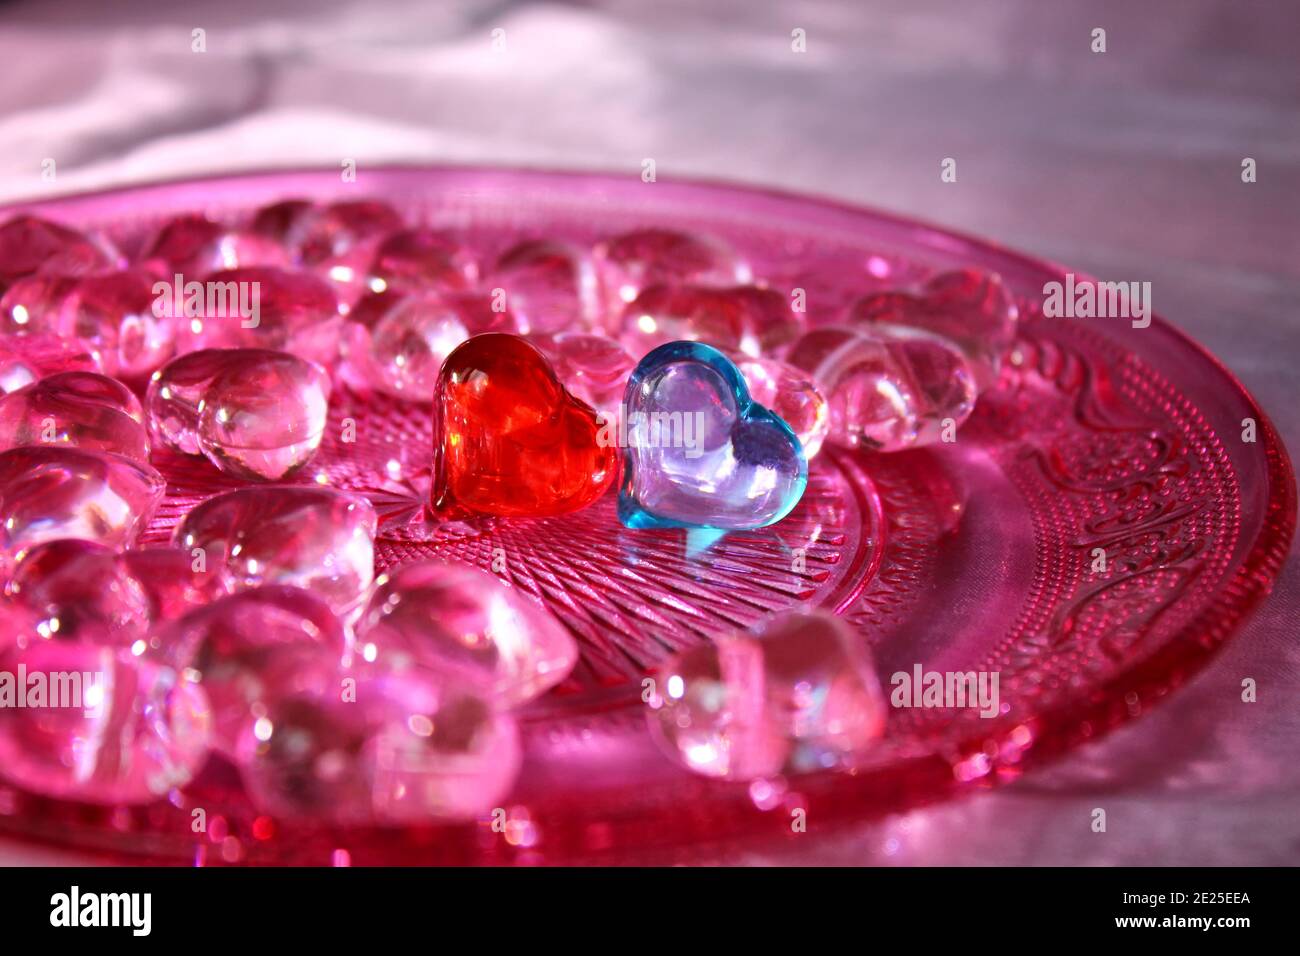 Un coeur en verre rouge et bleu entouré de coeurs roses sur une plaque en verre rose avec motif décoratif. Banque D'Images